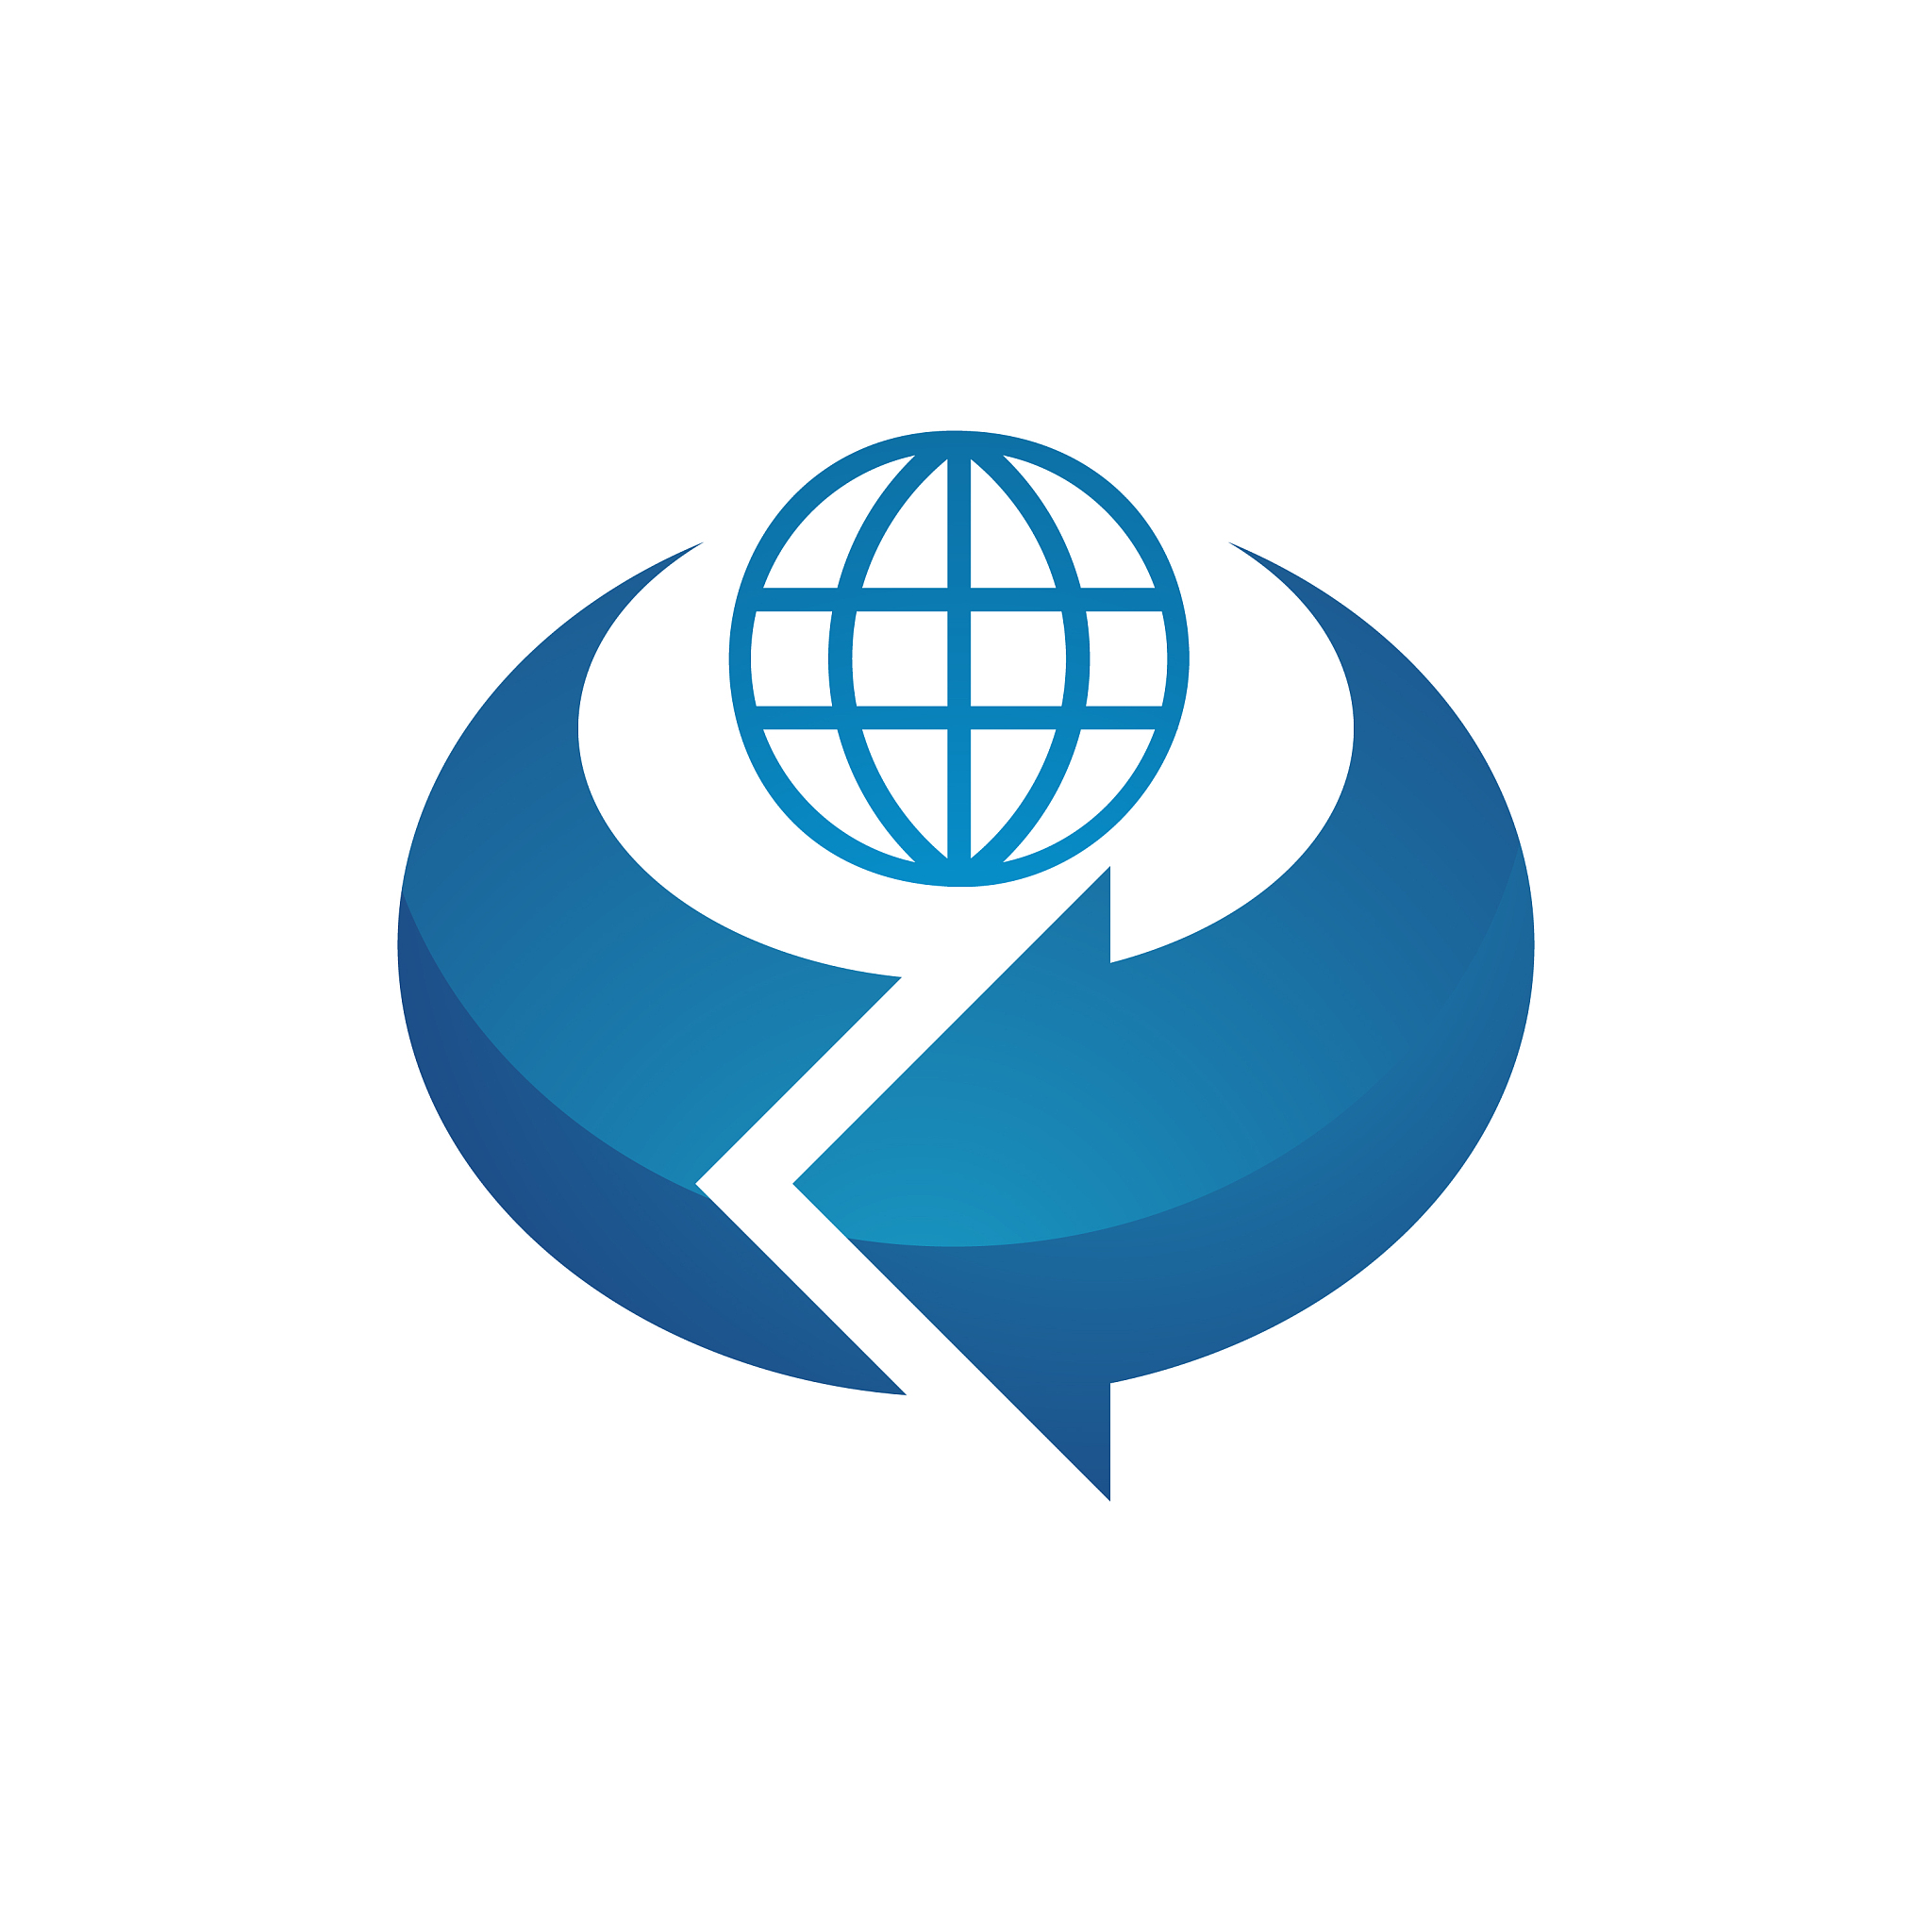 互联网项目logo设计图片